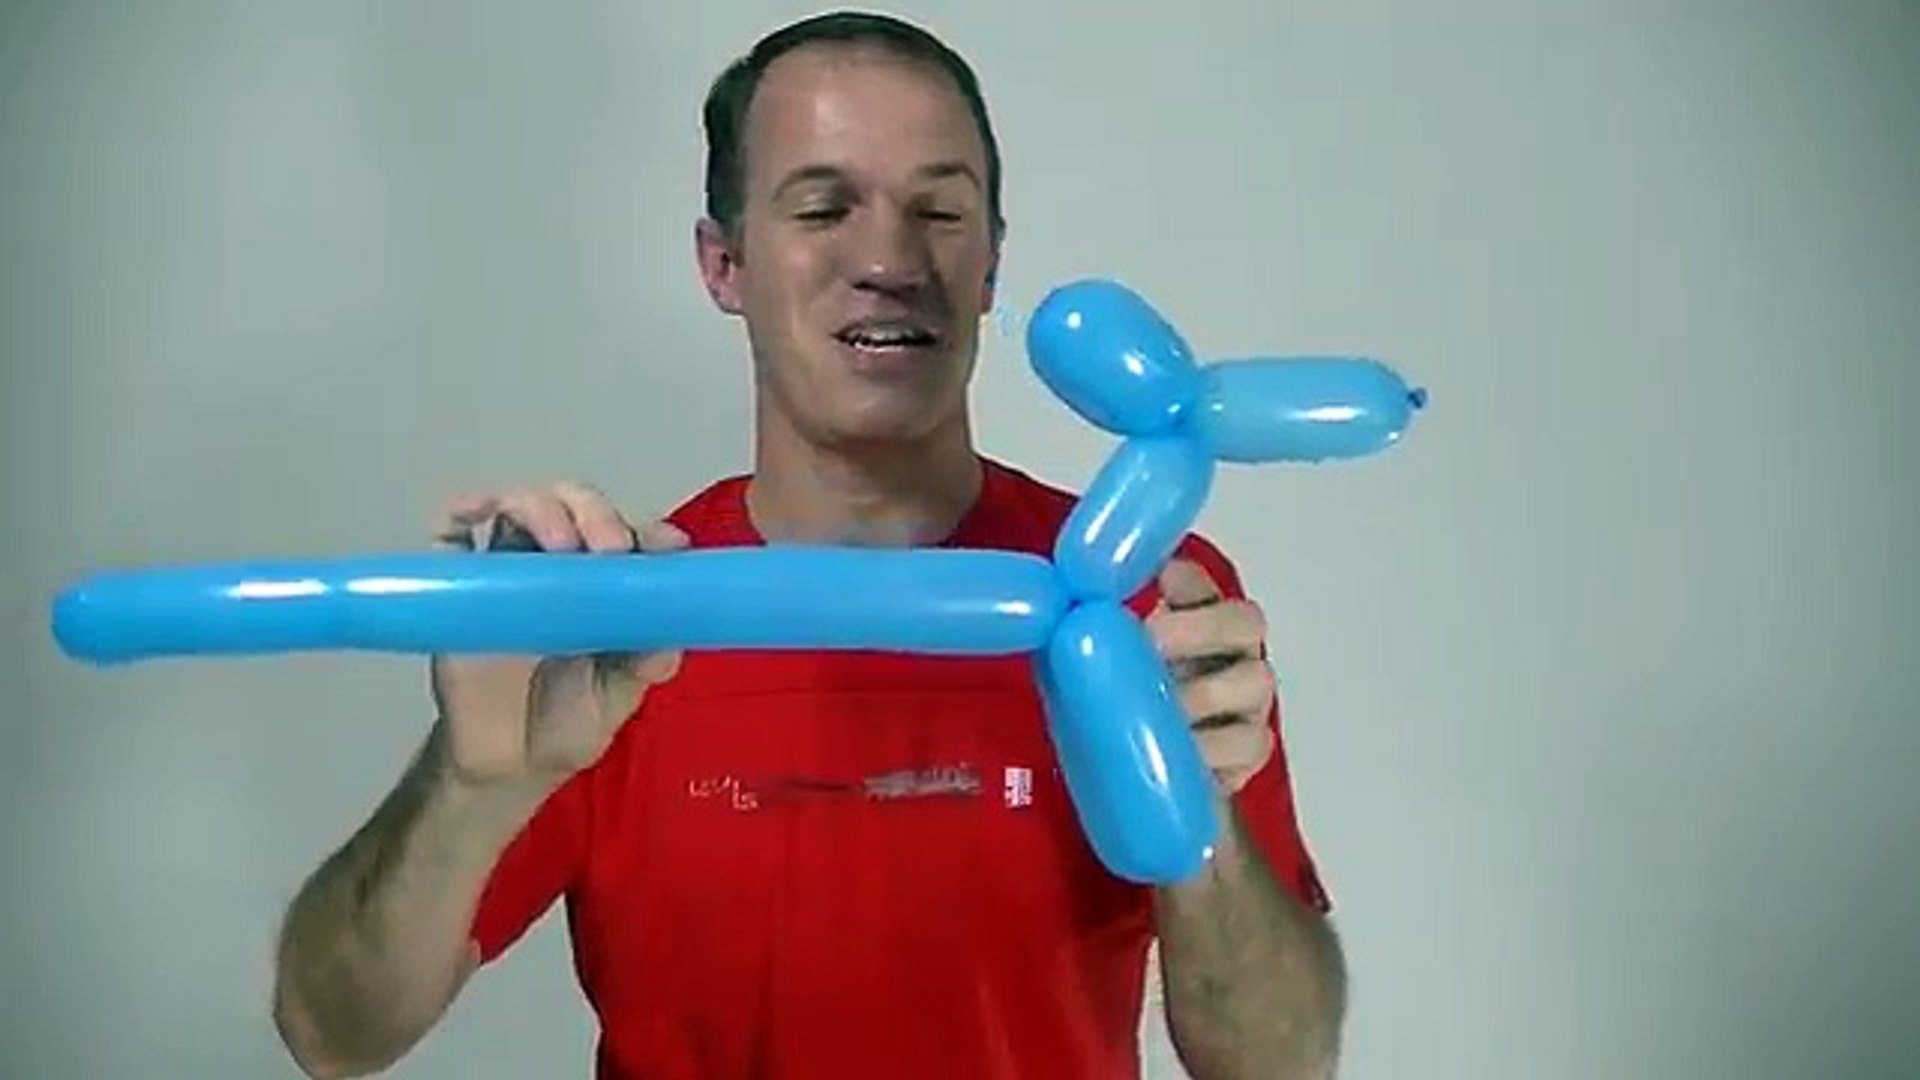 como hacer un perro con un globo - globoflexia perro - como hacer perritos  con globos - video Dailymotion